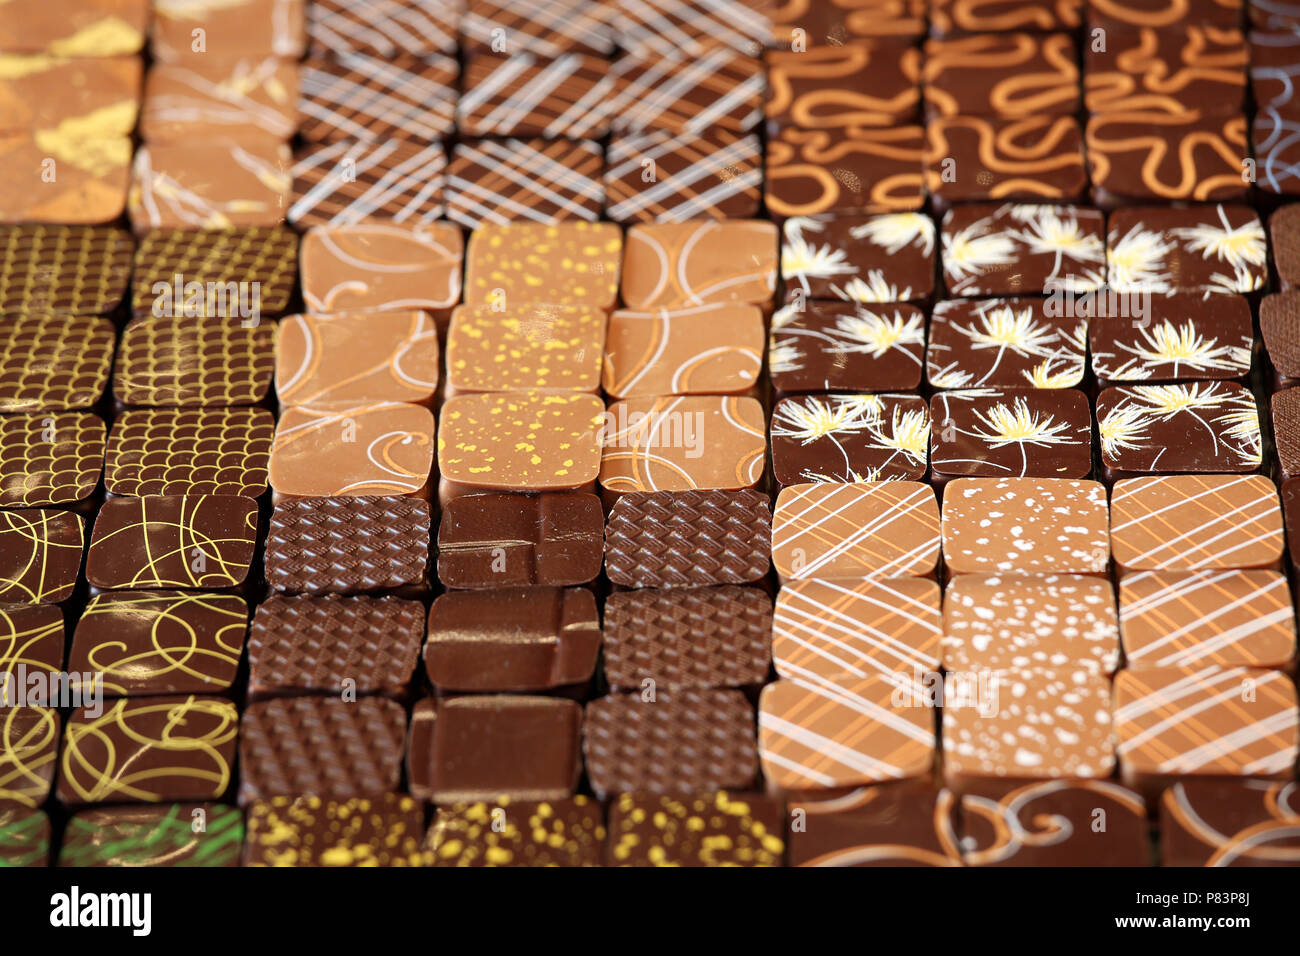 Variété de chocolats décorés, Paris, France, Europe Banque D'Images